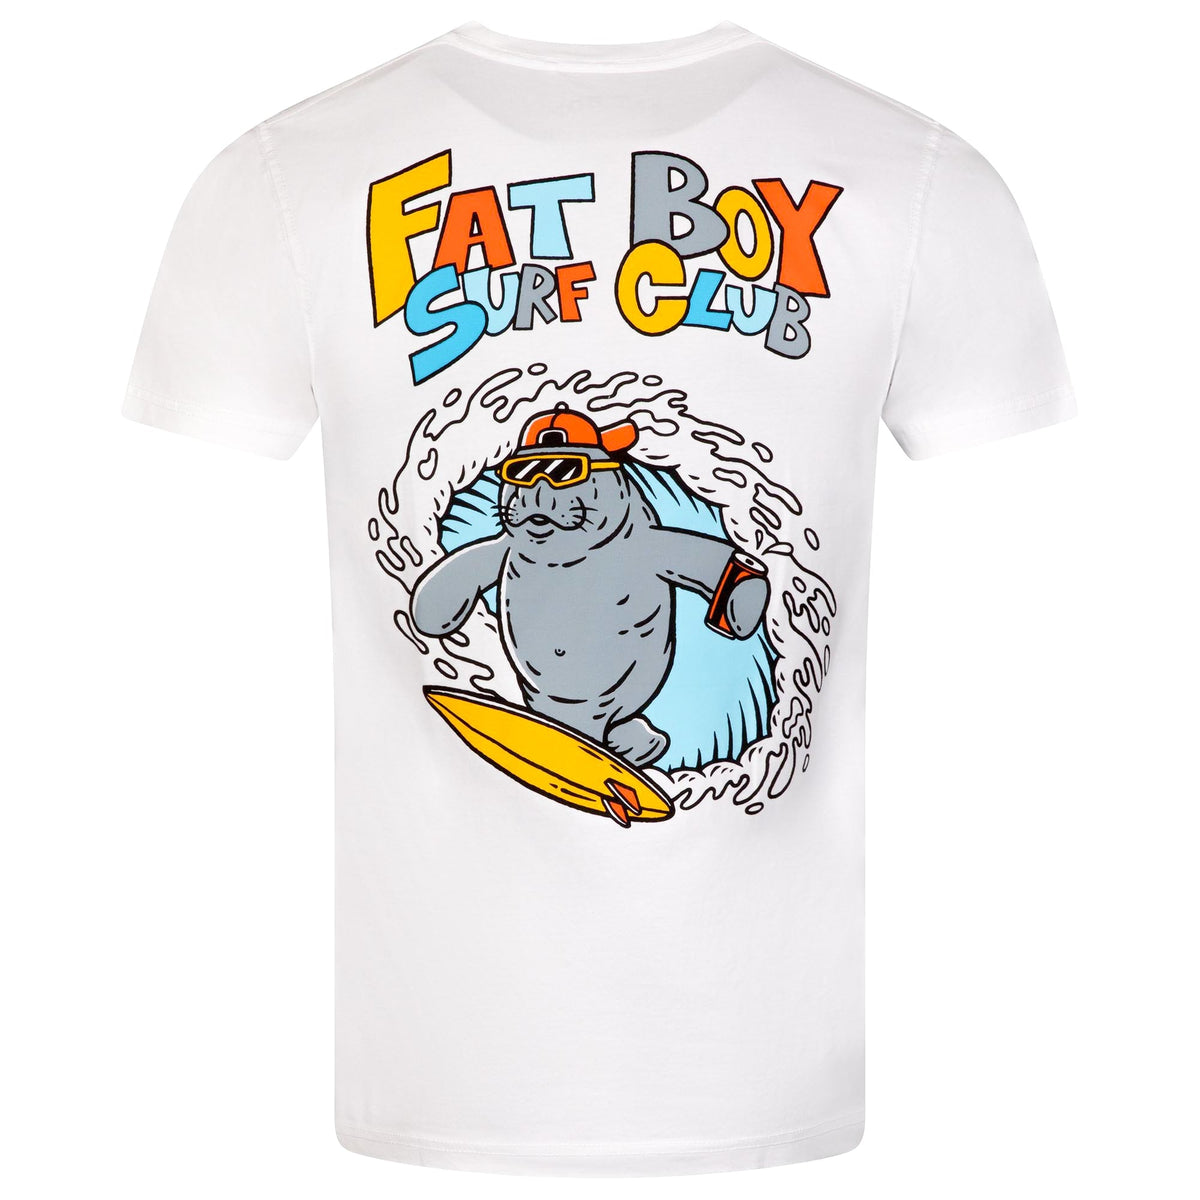 Fat Boy Surf Club Go Fast Gary Sunny Smith LLC